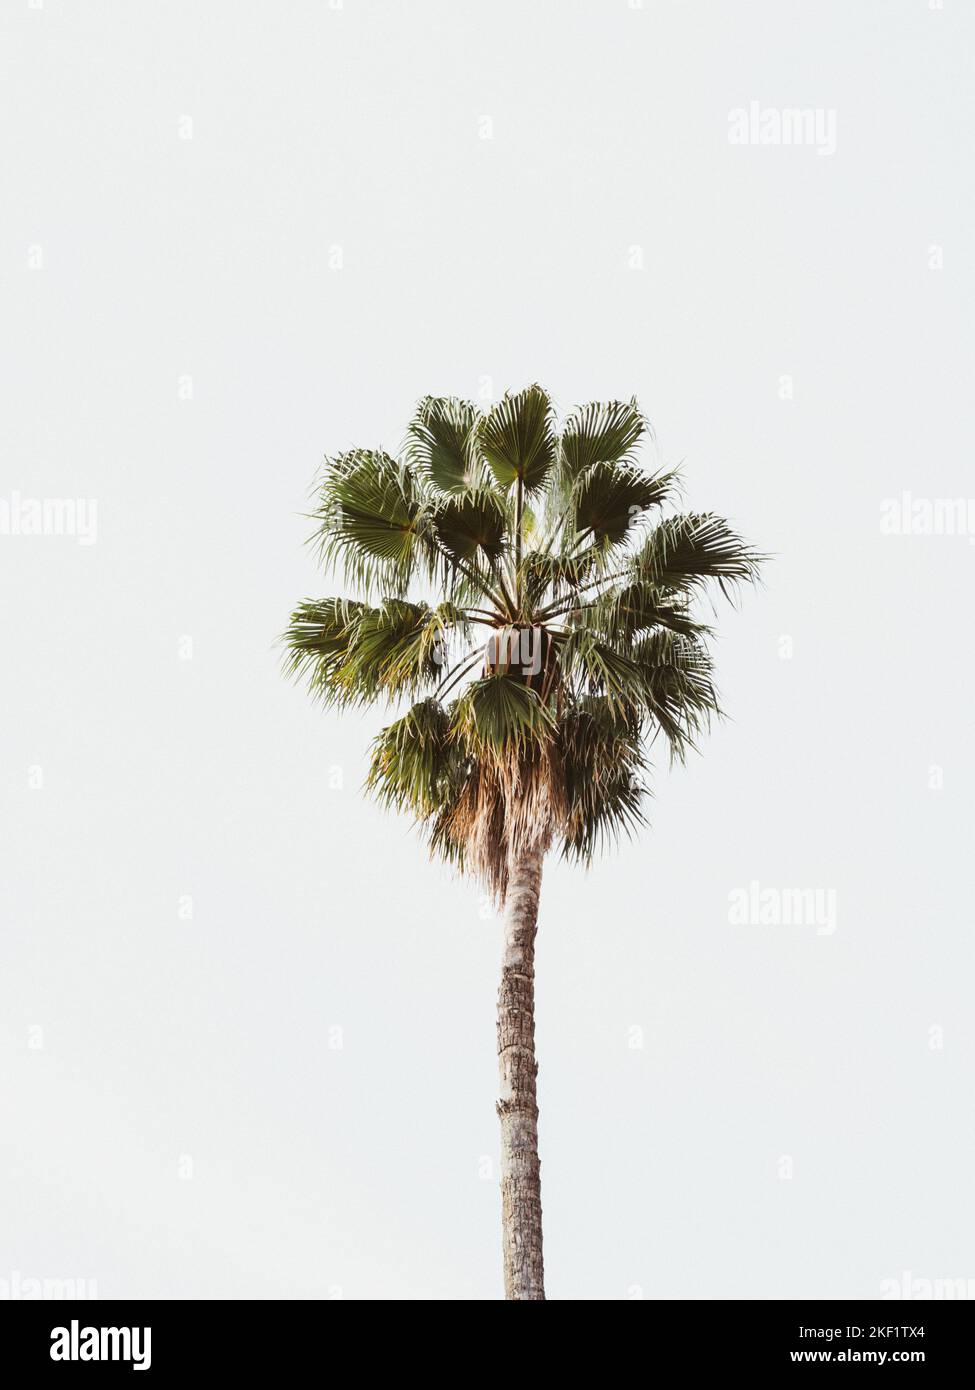 Eine einzelne große grüne Palme vor einem weißen Himmel. Palme auf weißem Hintergrund Stockfoto